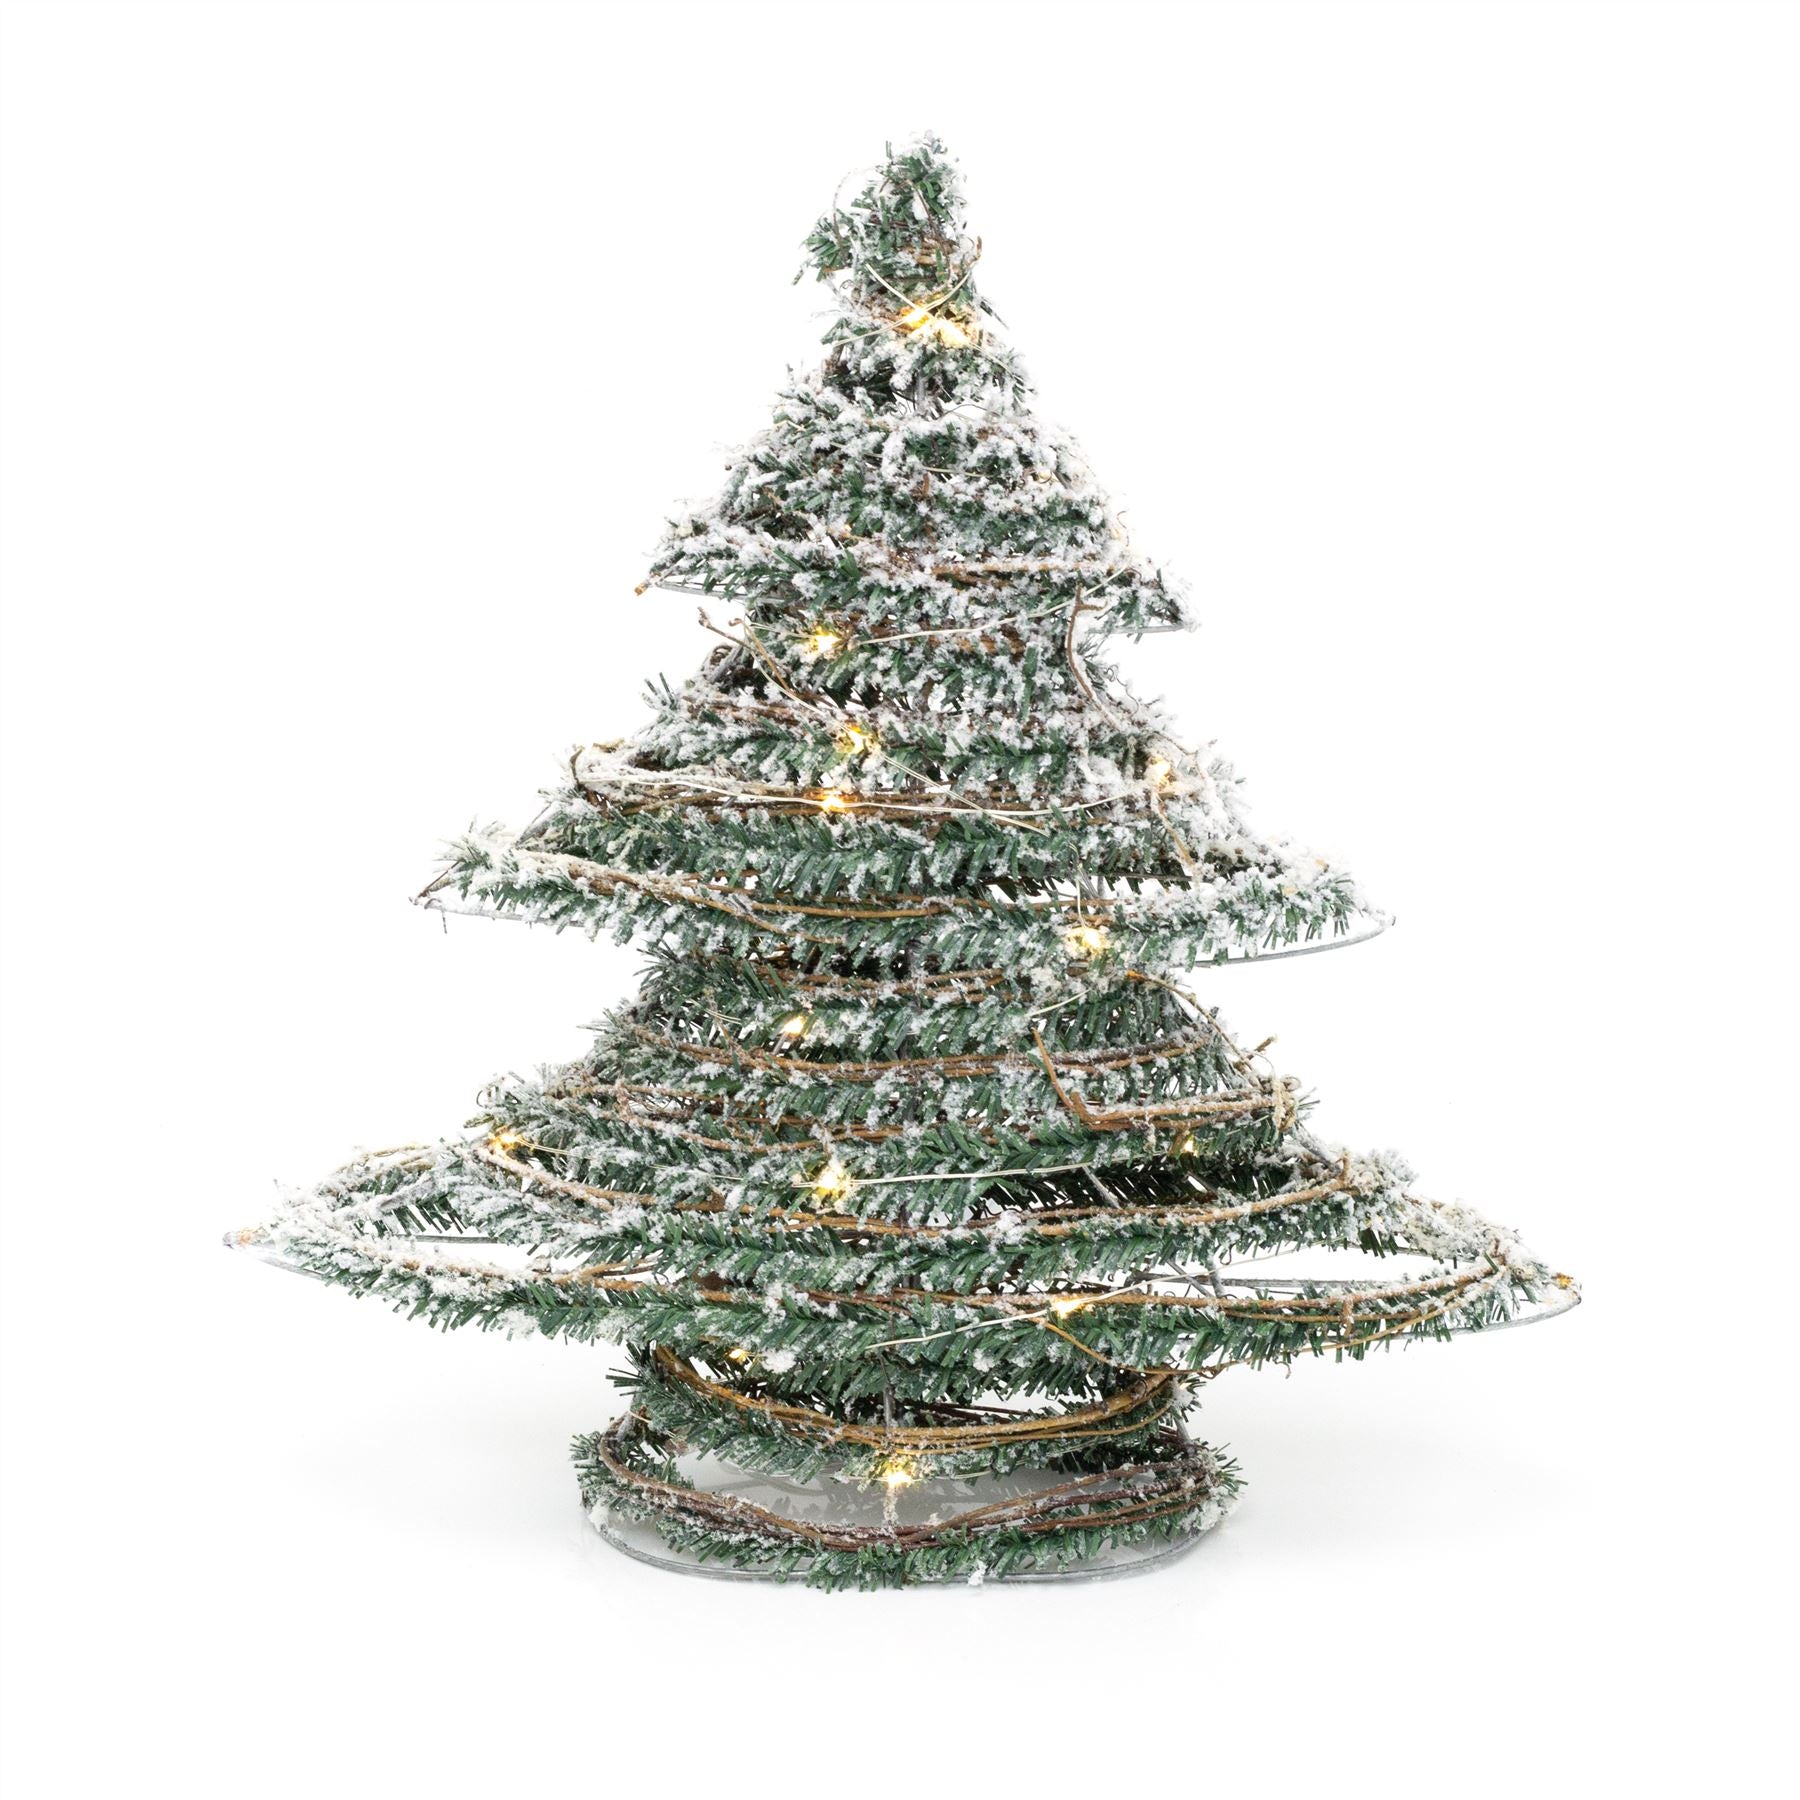 CHRISTMAS ORNAMENTS | Outstanding Ornaments & Keepsake Christmas